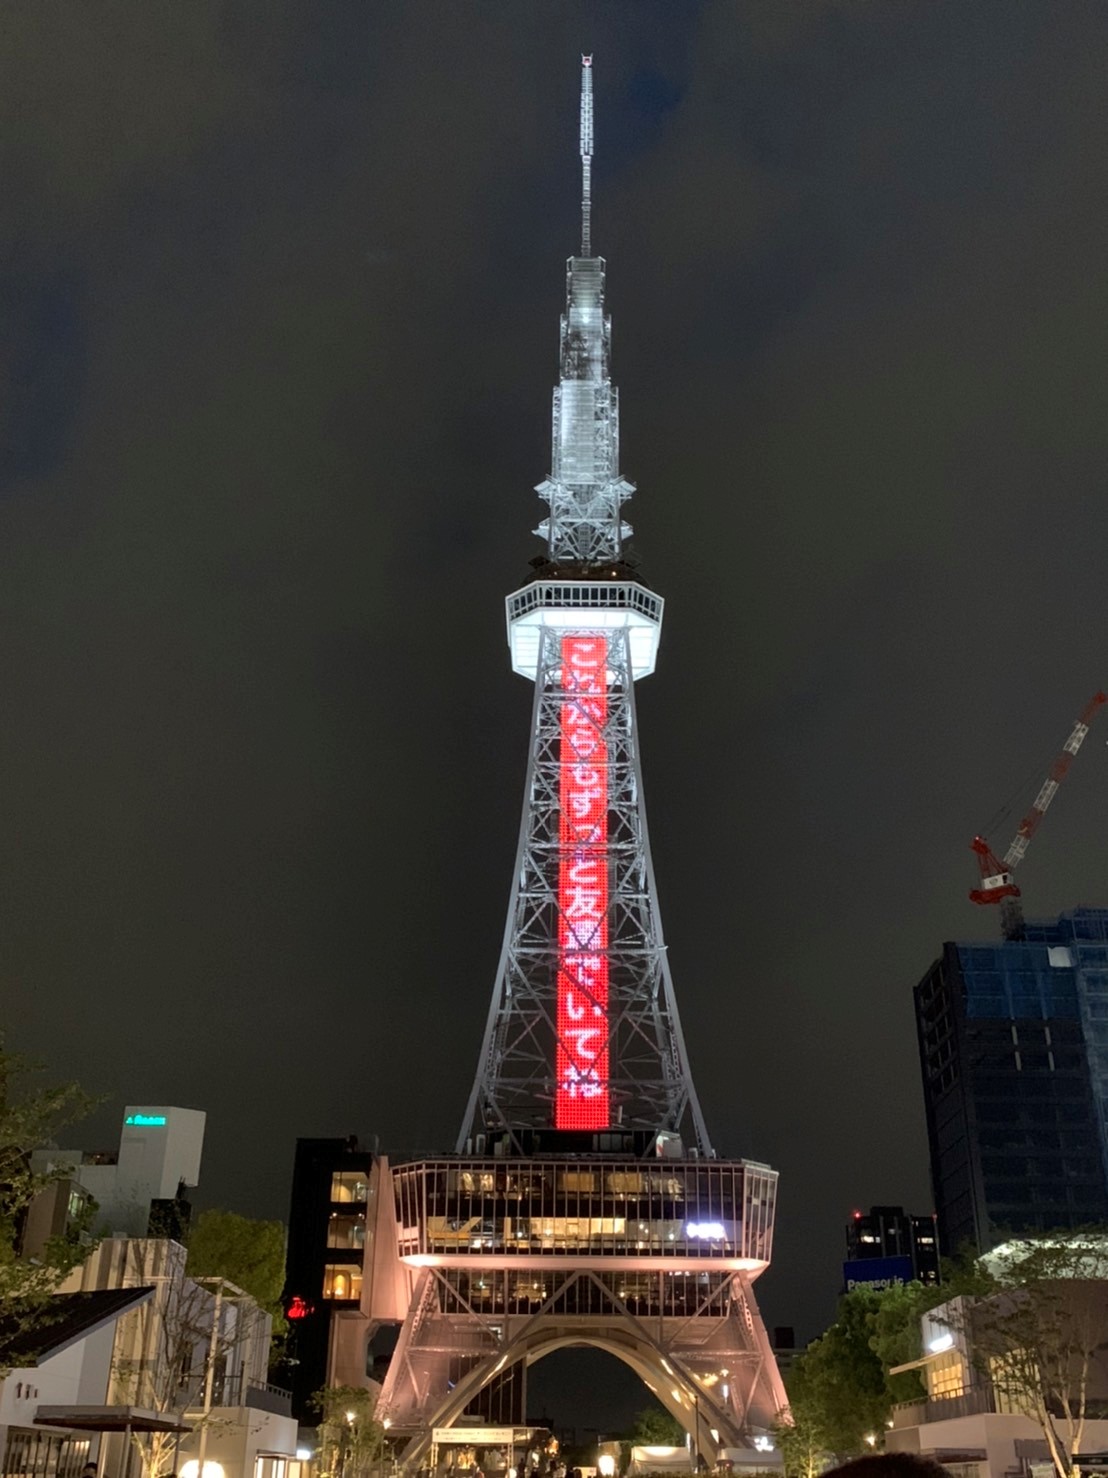 中部電力株式会社 中部電力 Mirai Towerで感謝を伝えます ありがとうのあふれる街に と思いを込めて募集した 今伝えたい感謝のメッセージ を今日 17日までの19時 22時に点灯します ありがとう を伝えたい大切な人とぜひお出かけください